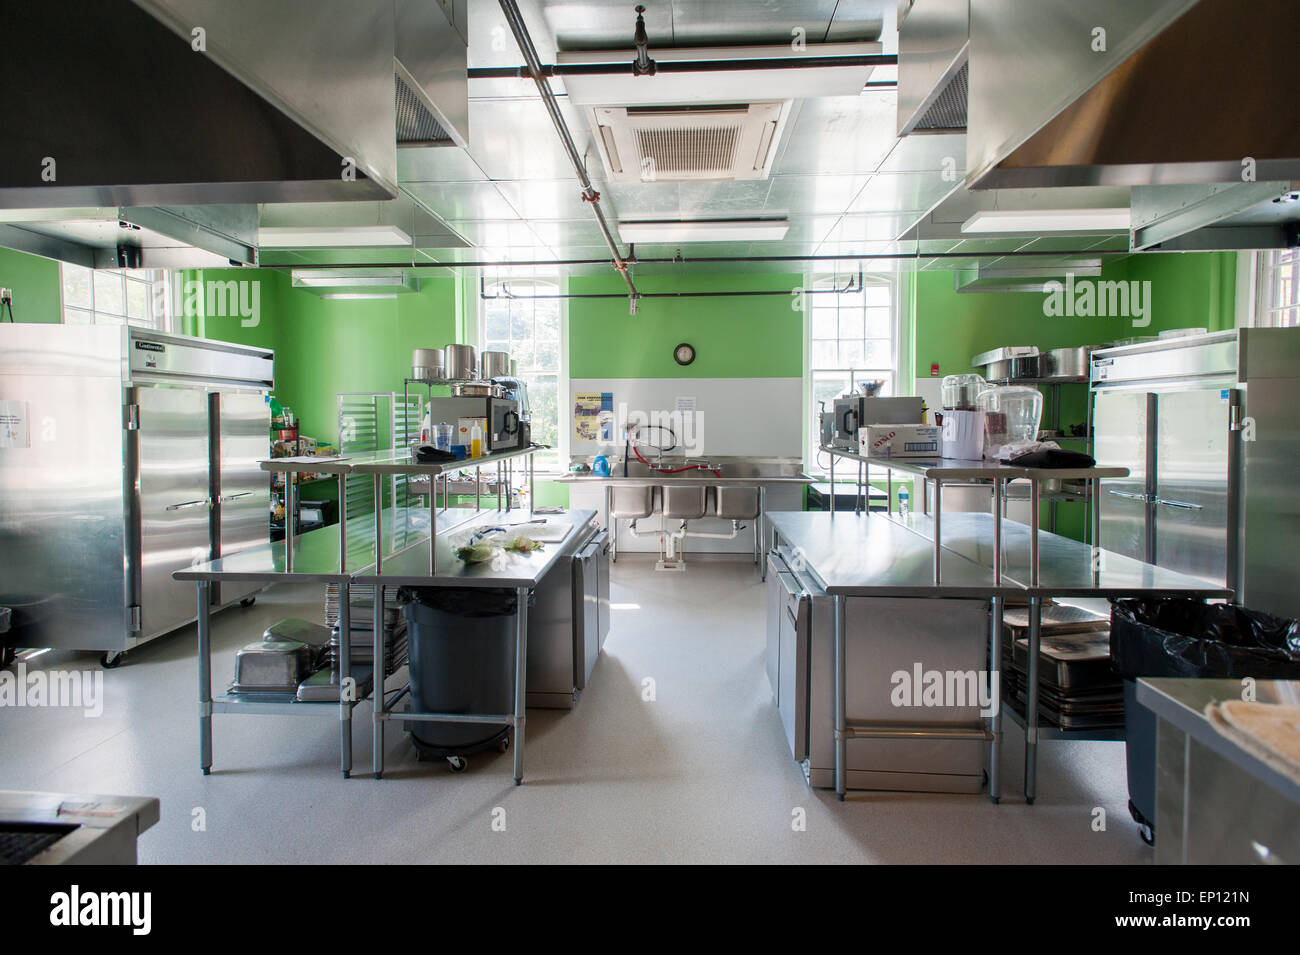 Cucina istituzionale con il verde brillante delle pareti dipinte e attrezzature in acciaio inossidabile in Denton, Maryland, Stati Uniti d'America Foto Stock